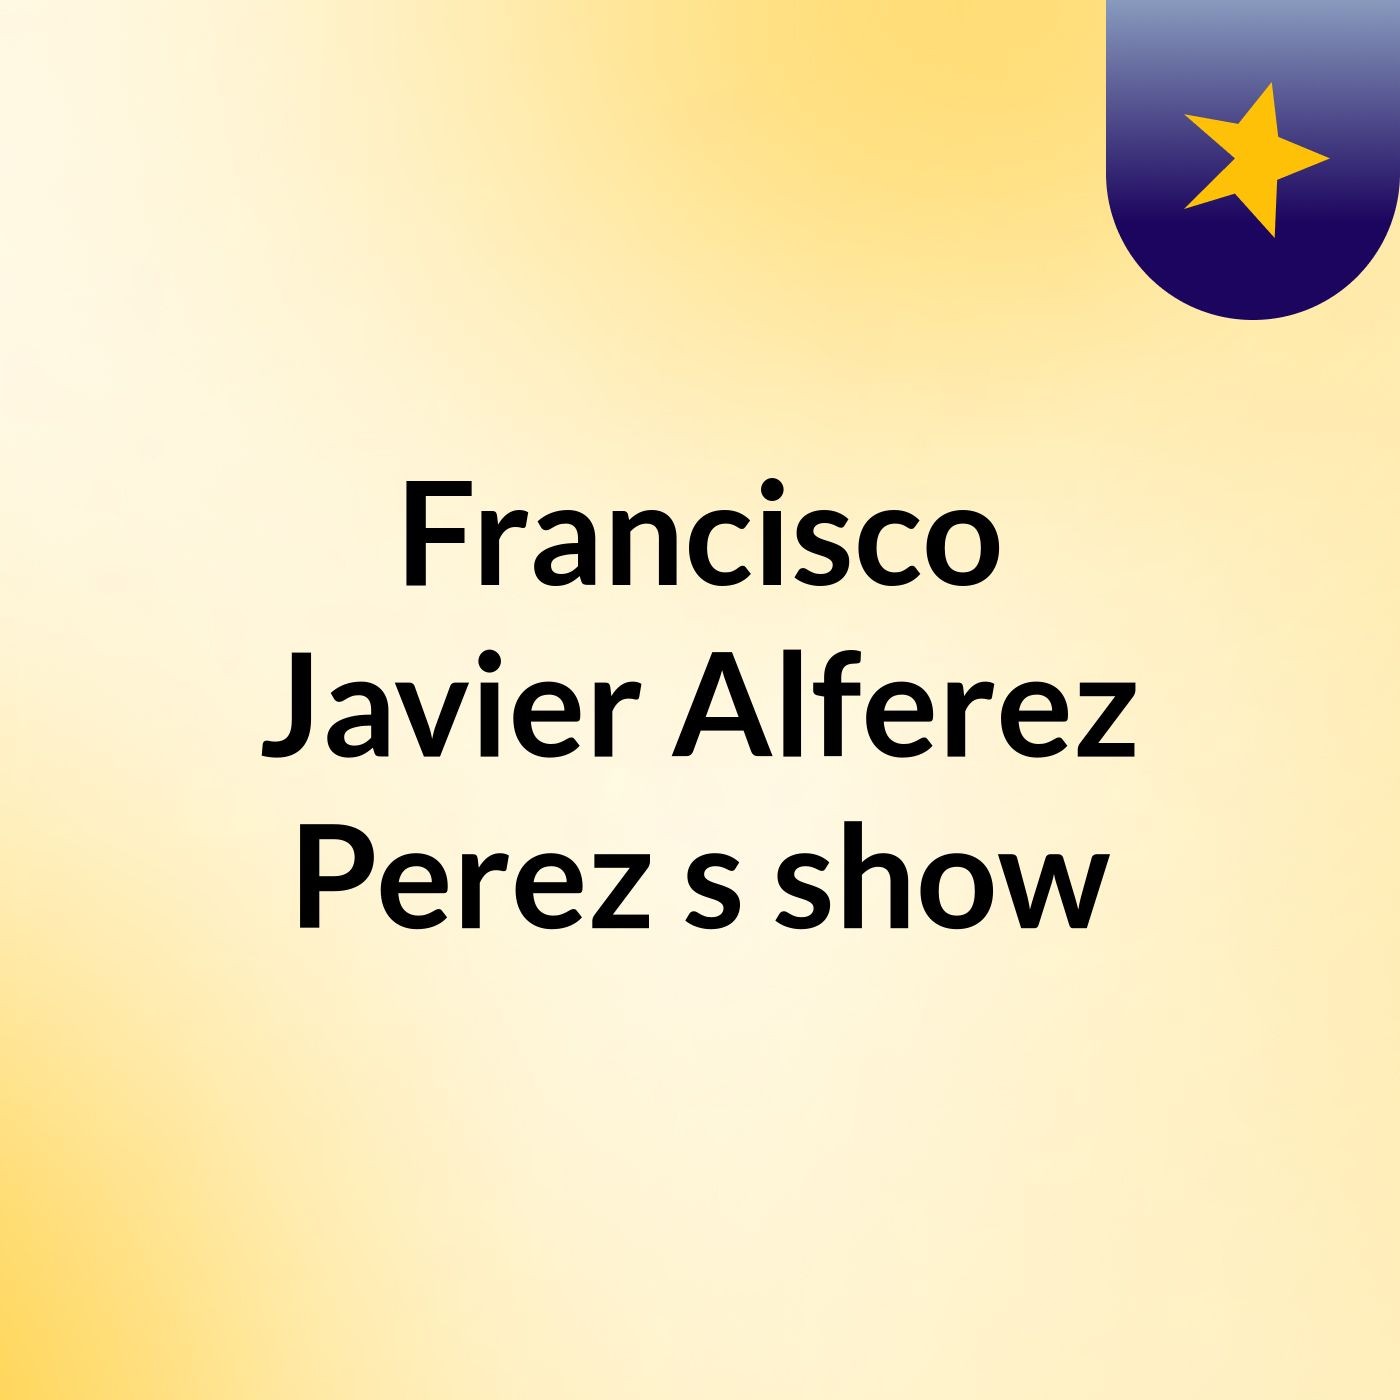 Francisco Javier Alferez Perez's show